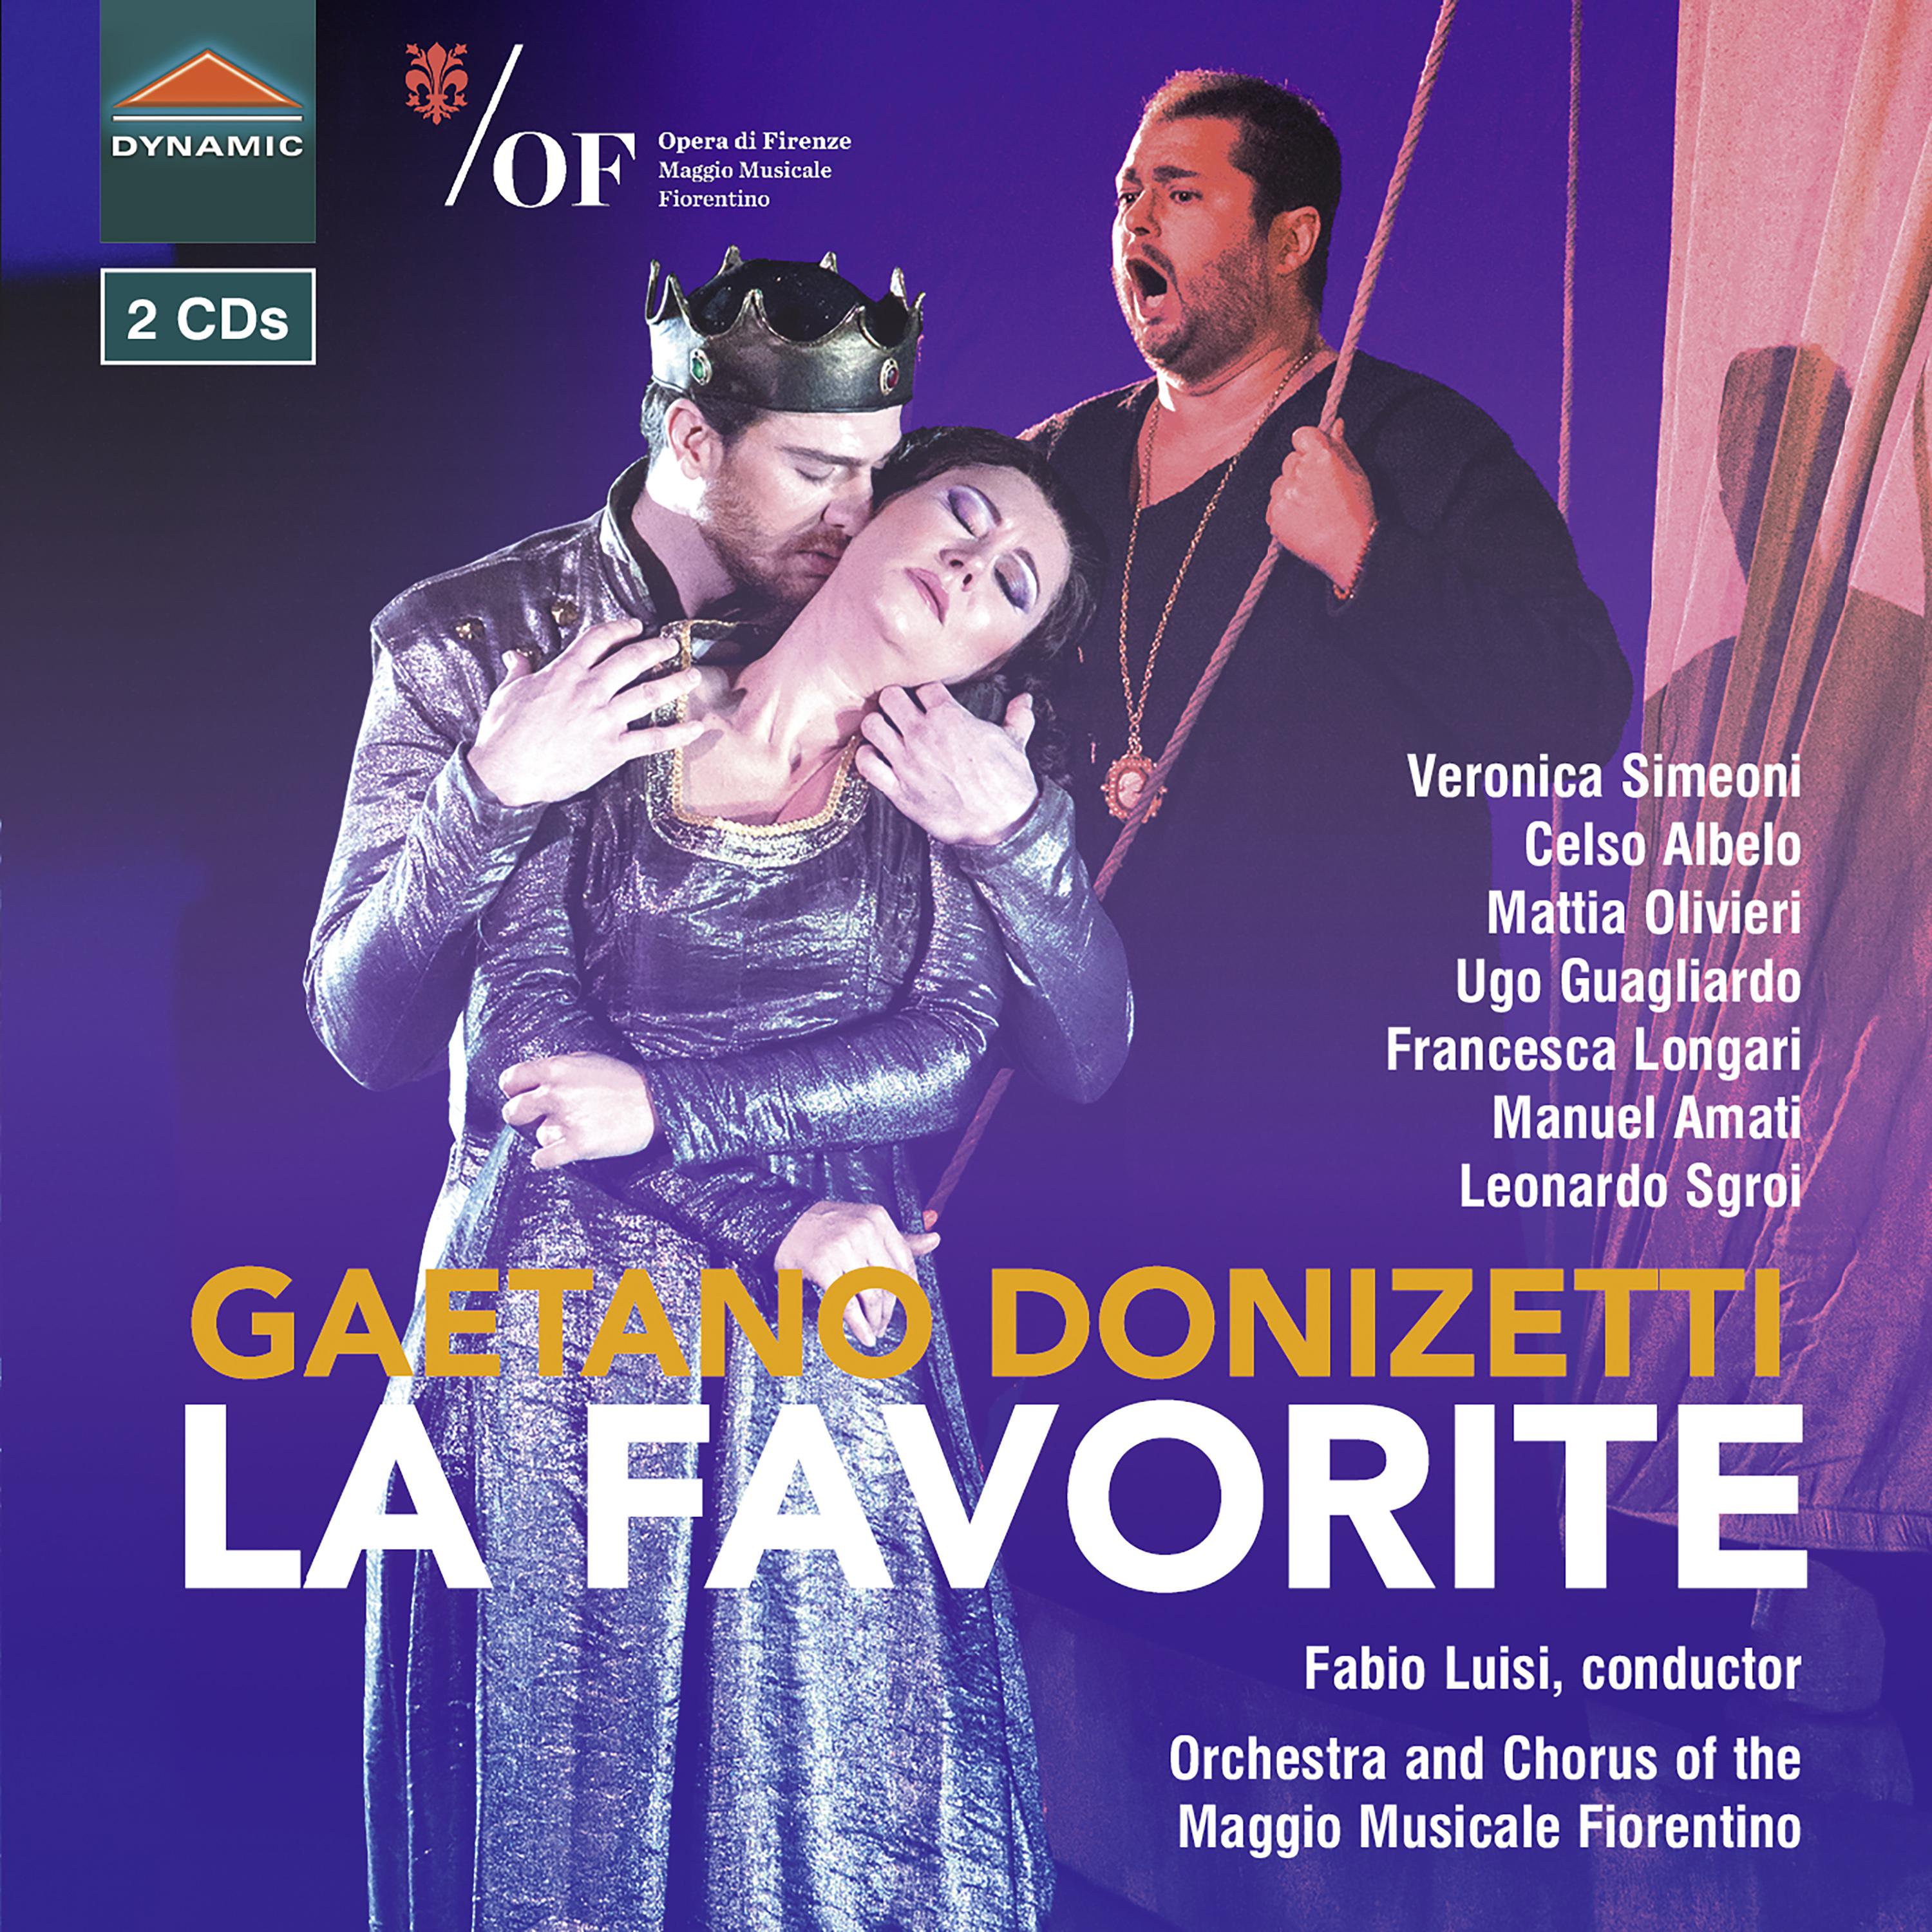 DONIZETTI, G.: Favorite (La) [Opera] (Simeoni, Albelo, Olivieri, Guagliardo, Longari, Amati, Fiorentino Maggio Musical Chorus and Orchestra, Luisi)